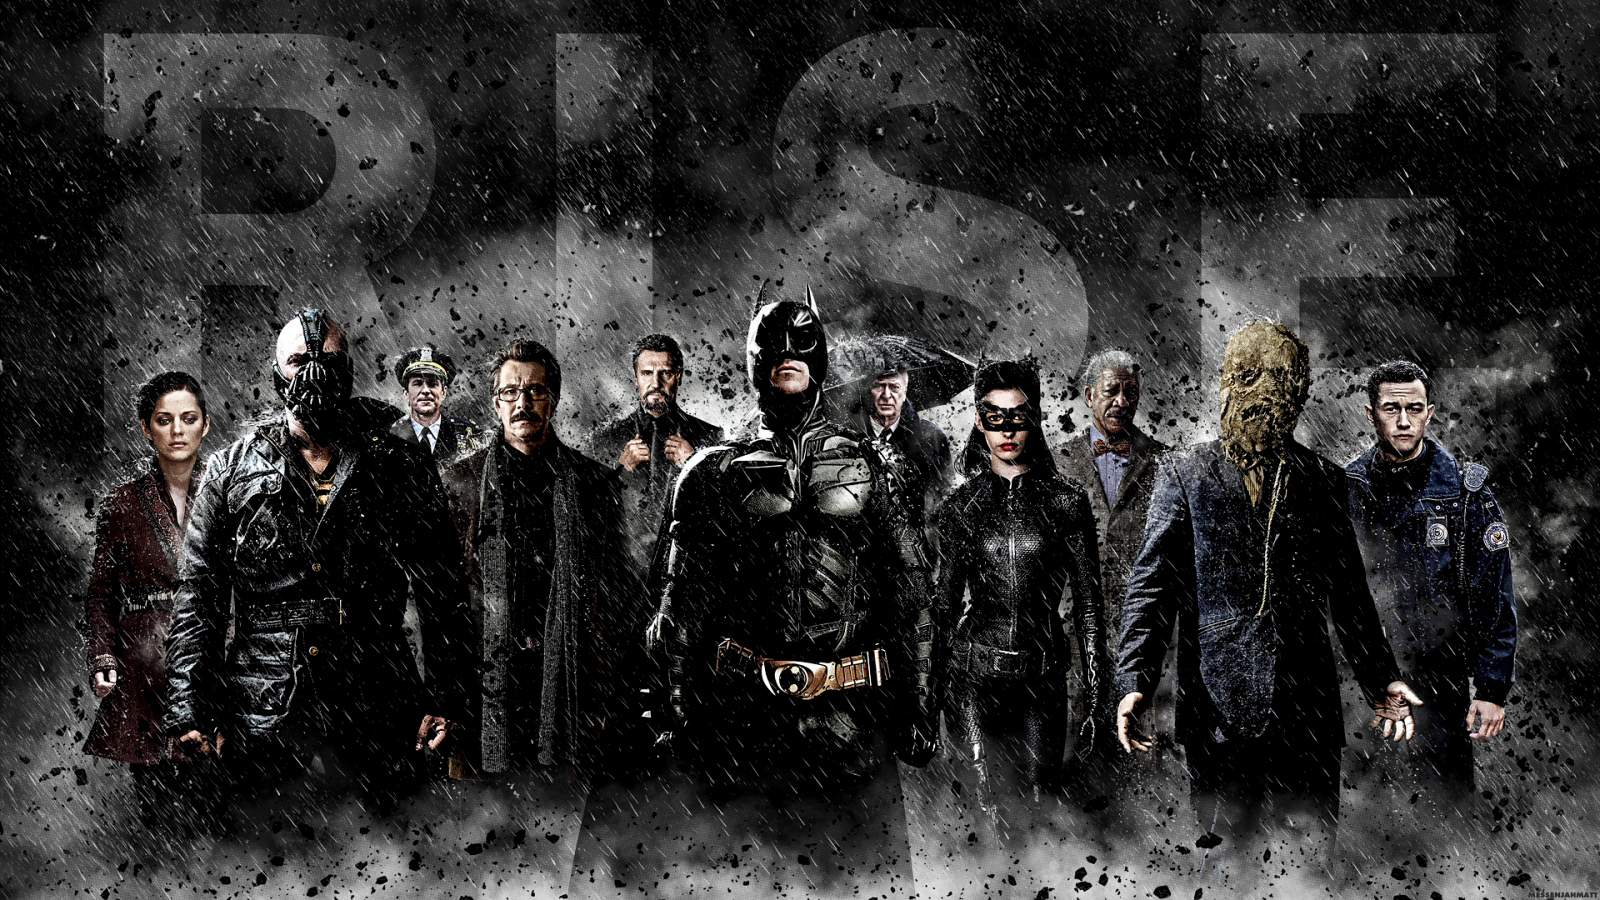 Dark Knight Rises HD Poster Wallpaper